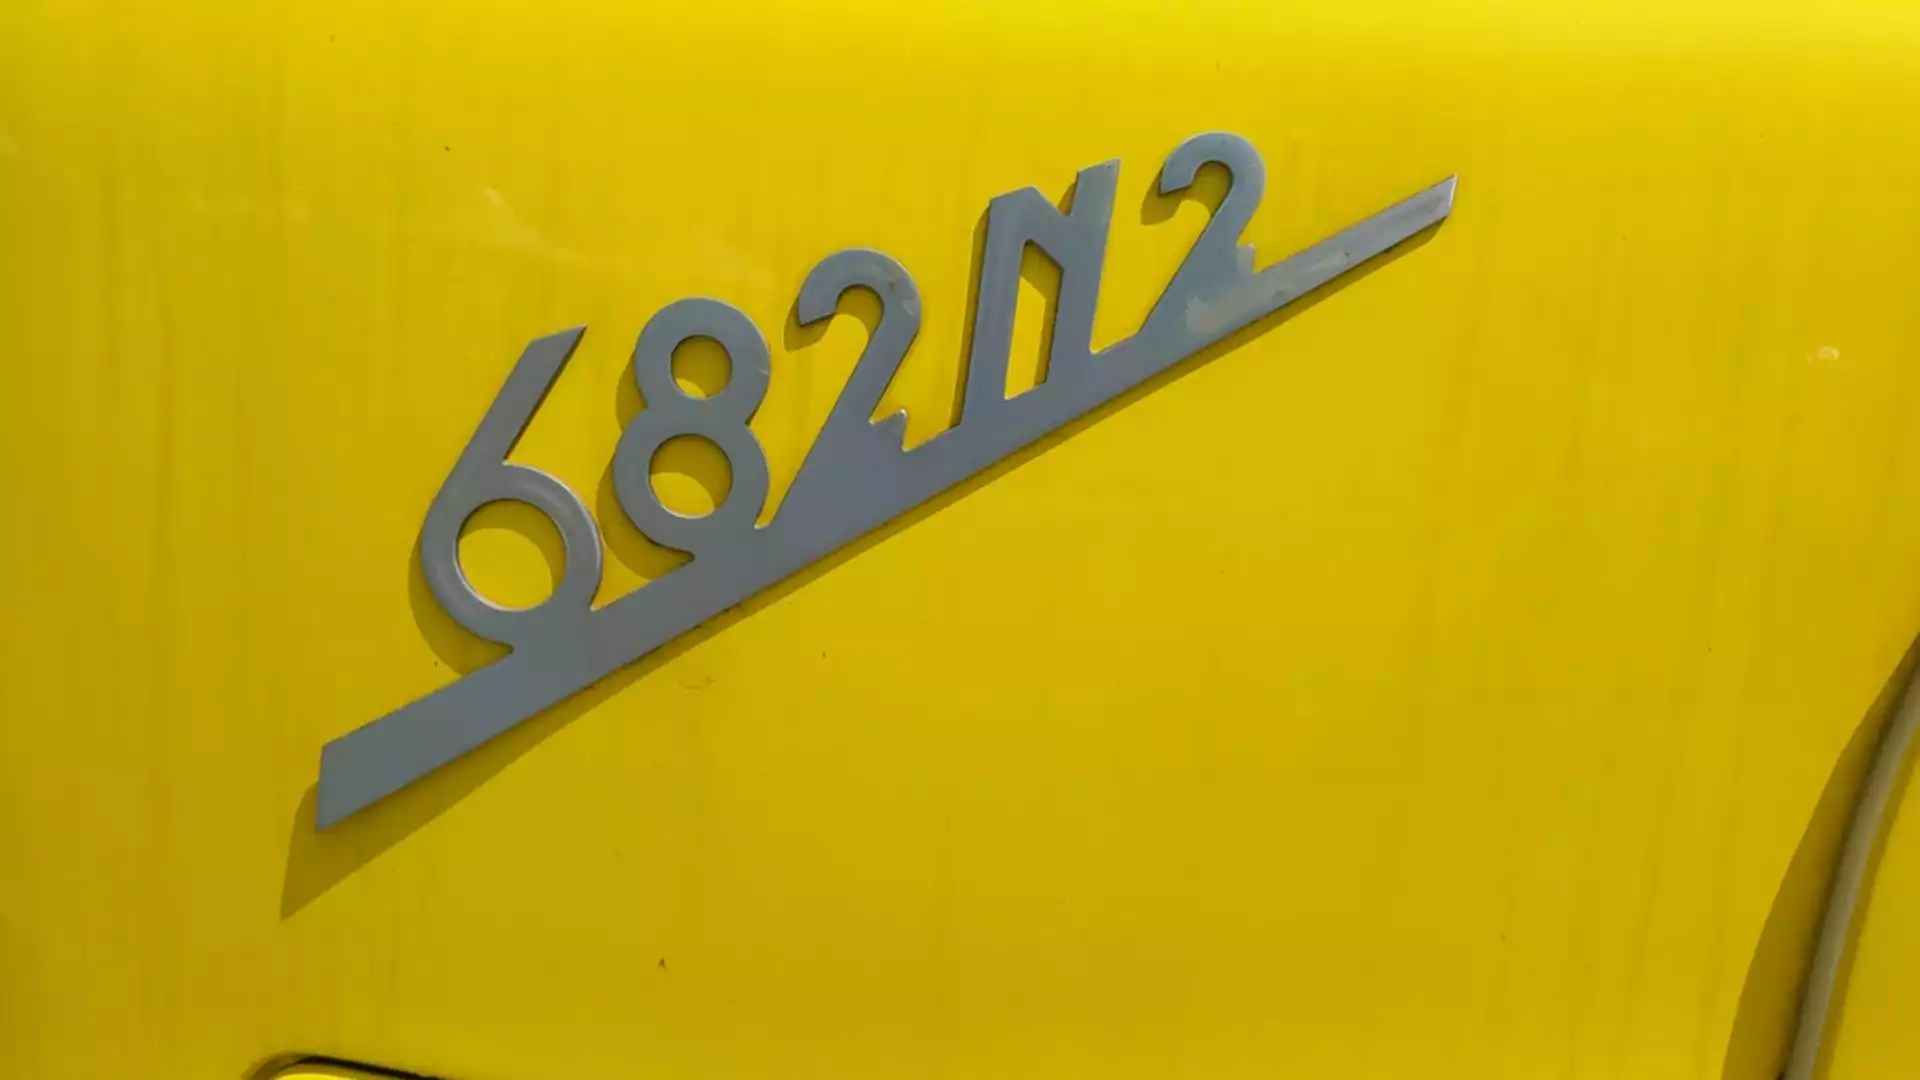 Il Fiat 682 è il primo vero camion e trattore per semirimorchi versatile